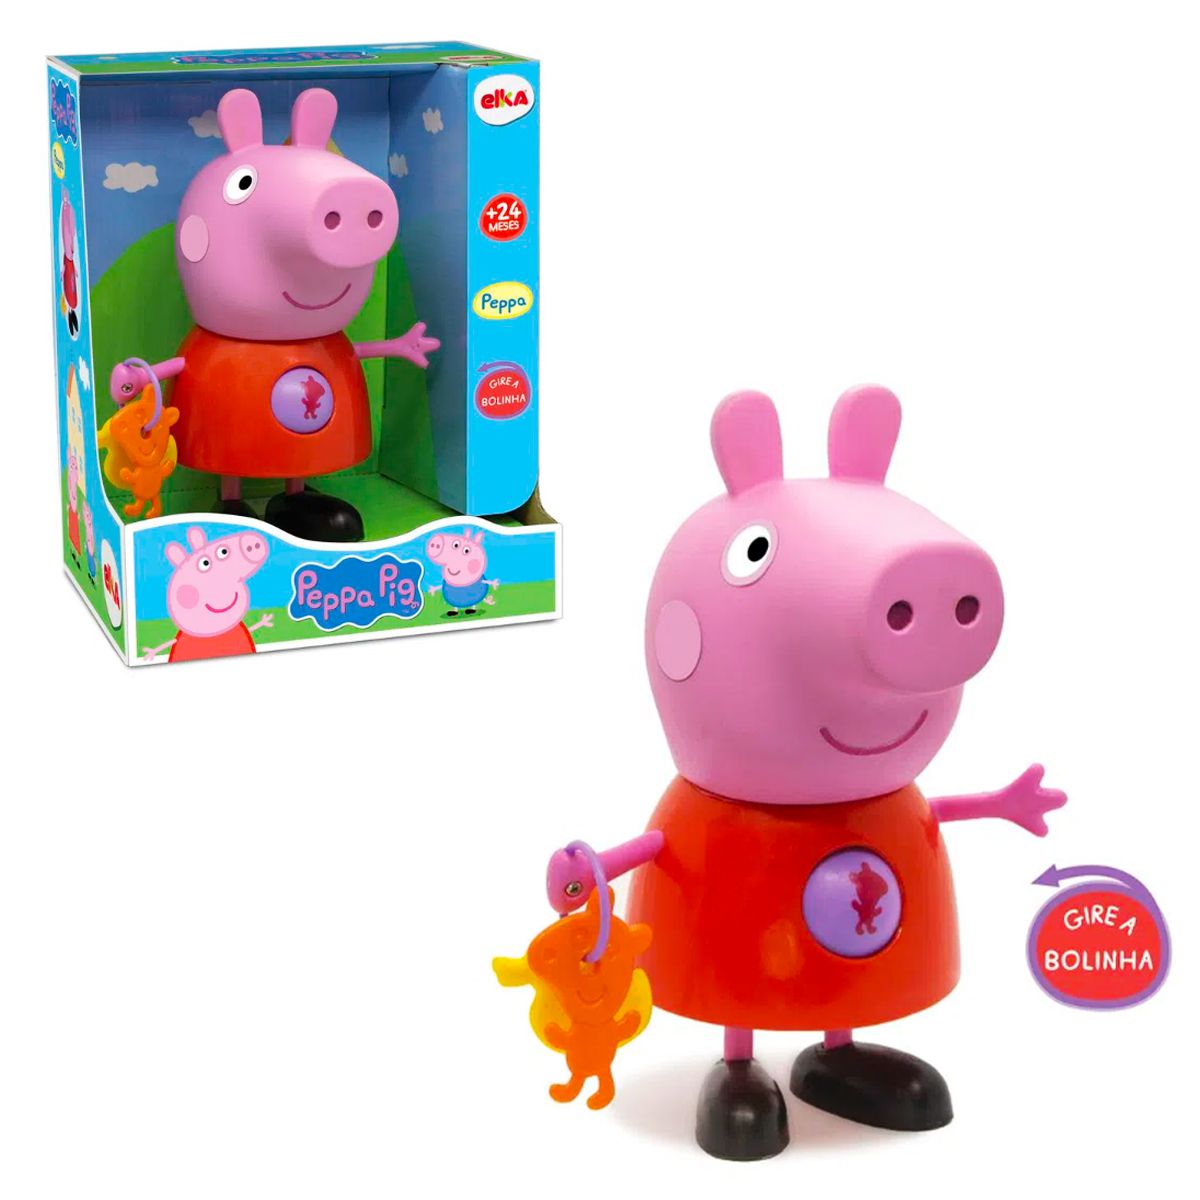 Brinquedo Peppa Pig Com Atividades 24 cm - Elka - Shop Macrozao